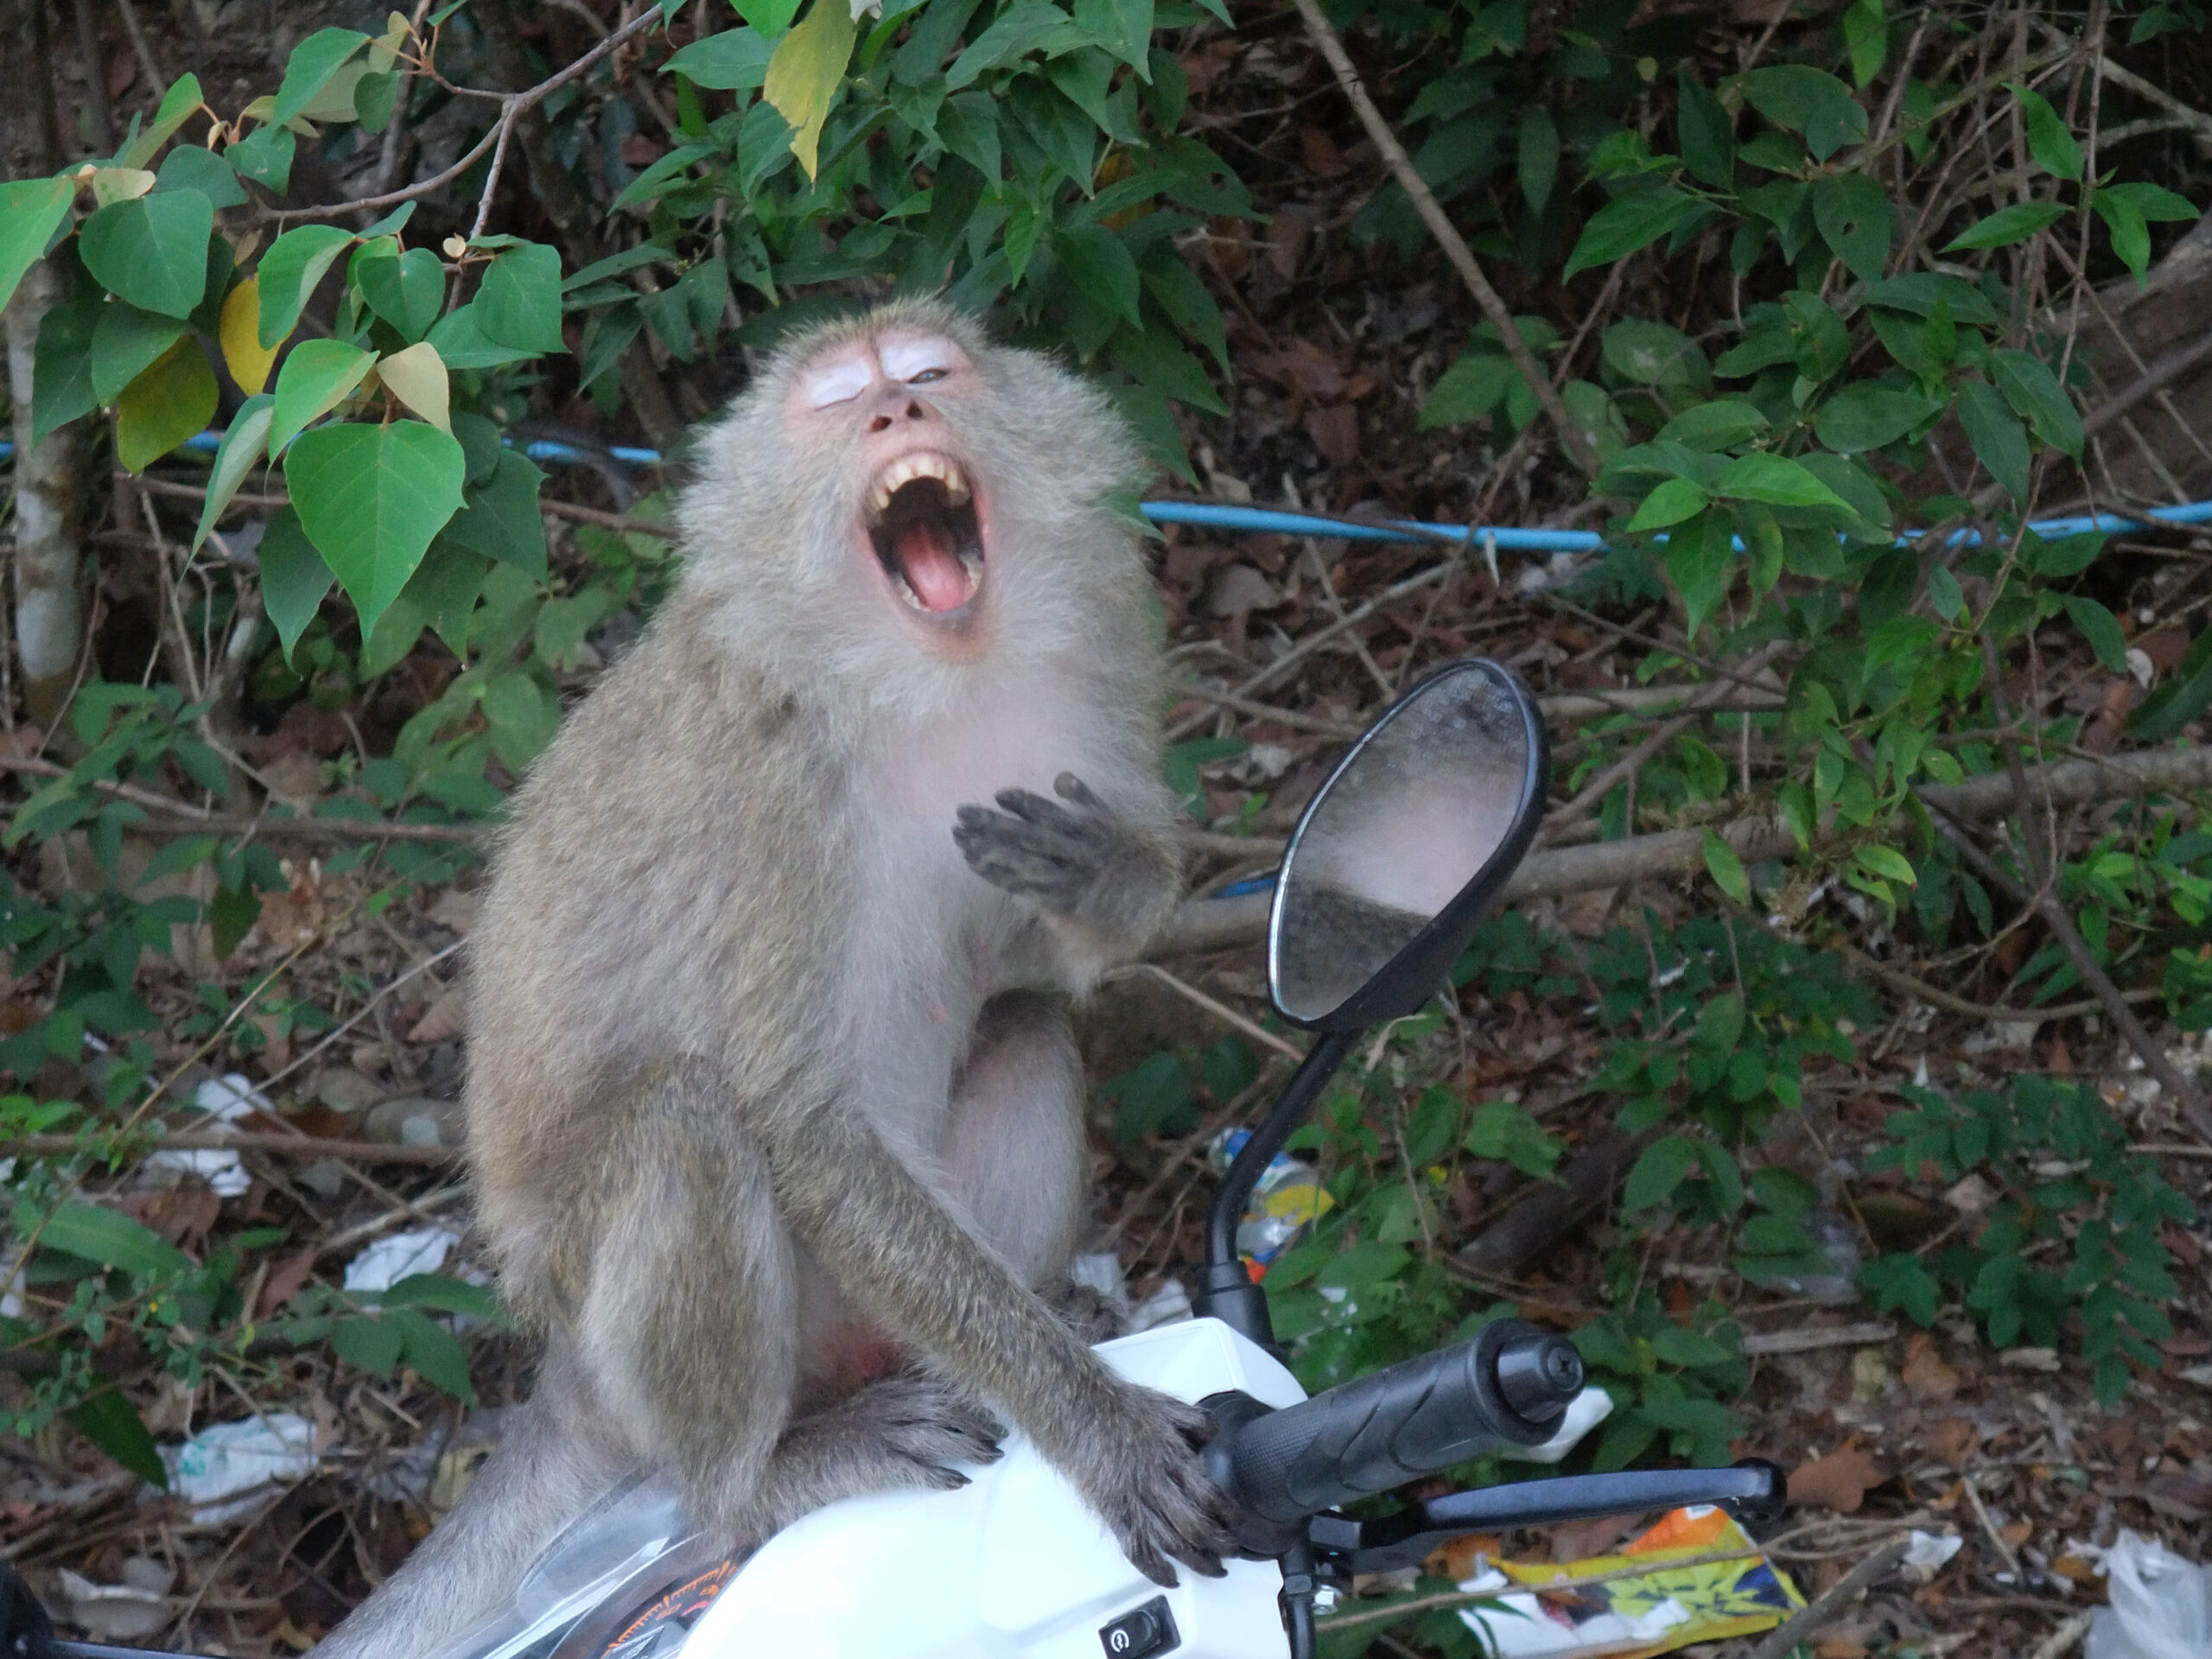 Monkey on a Motorbike in Koh Chang